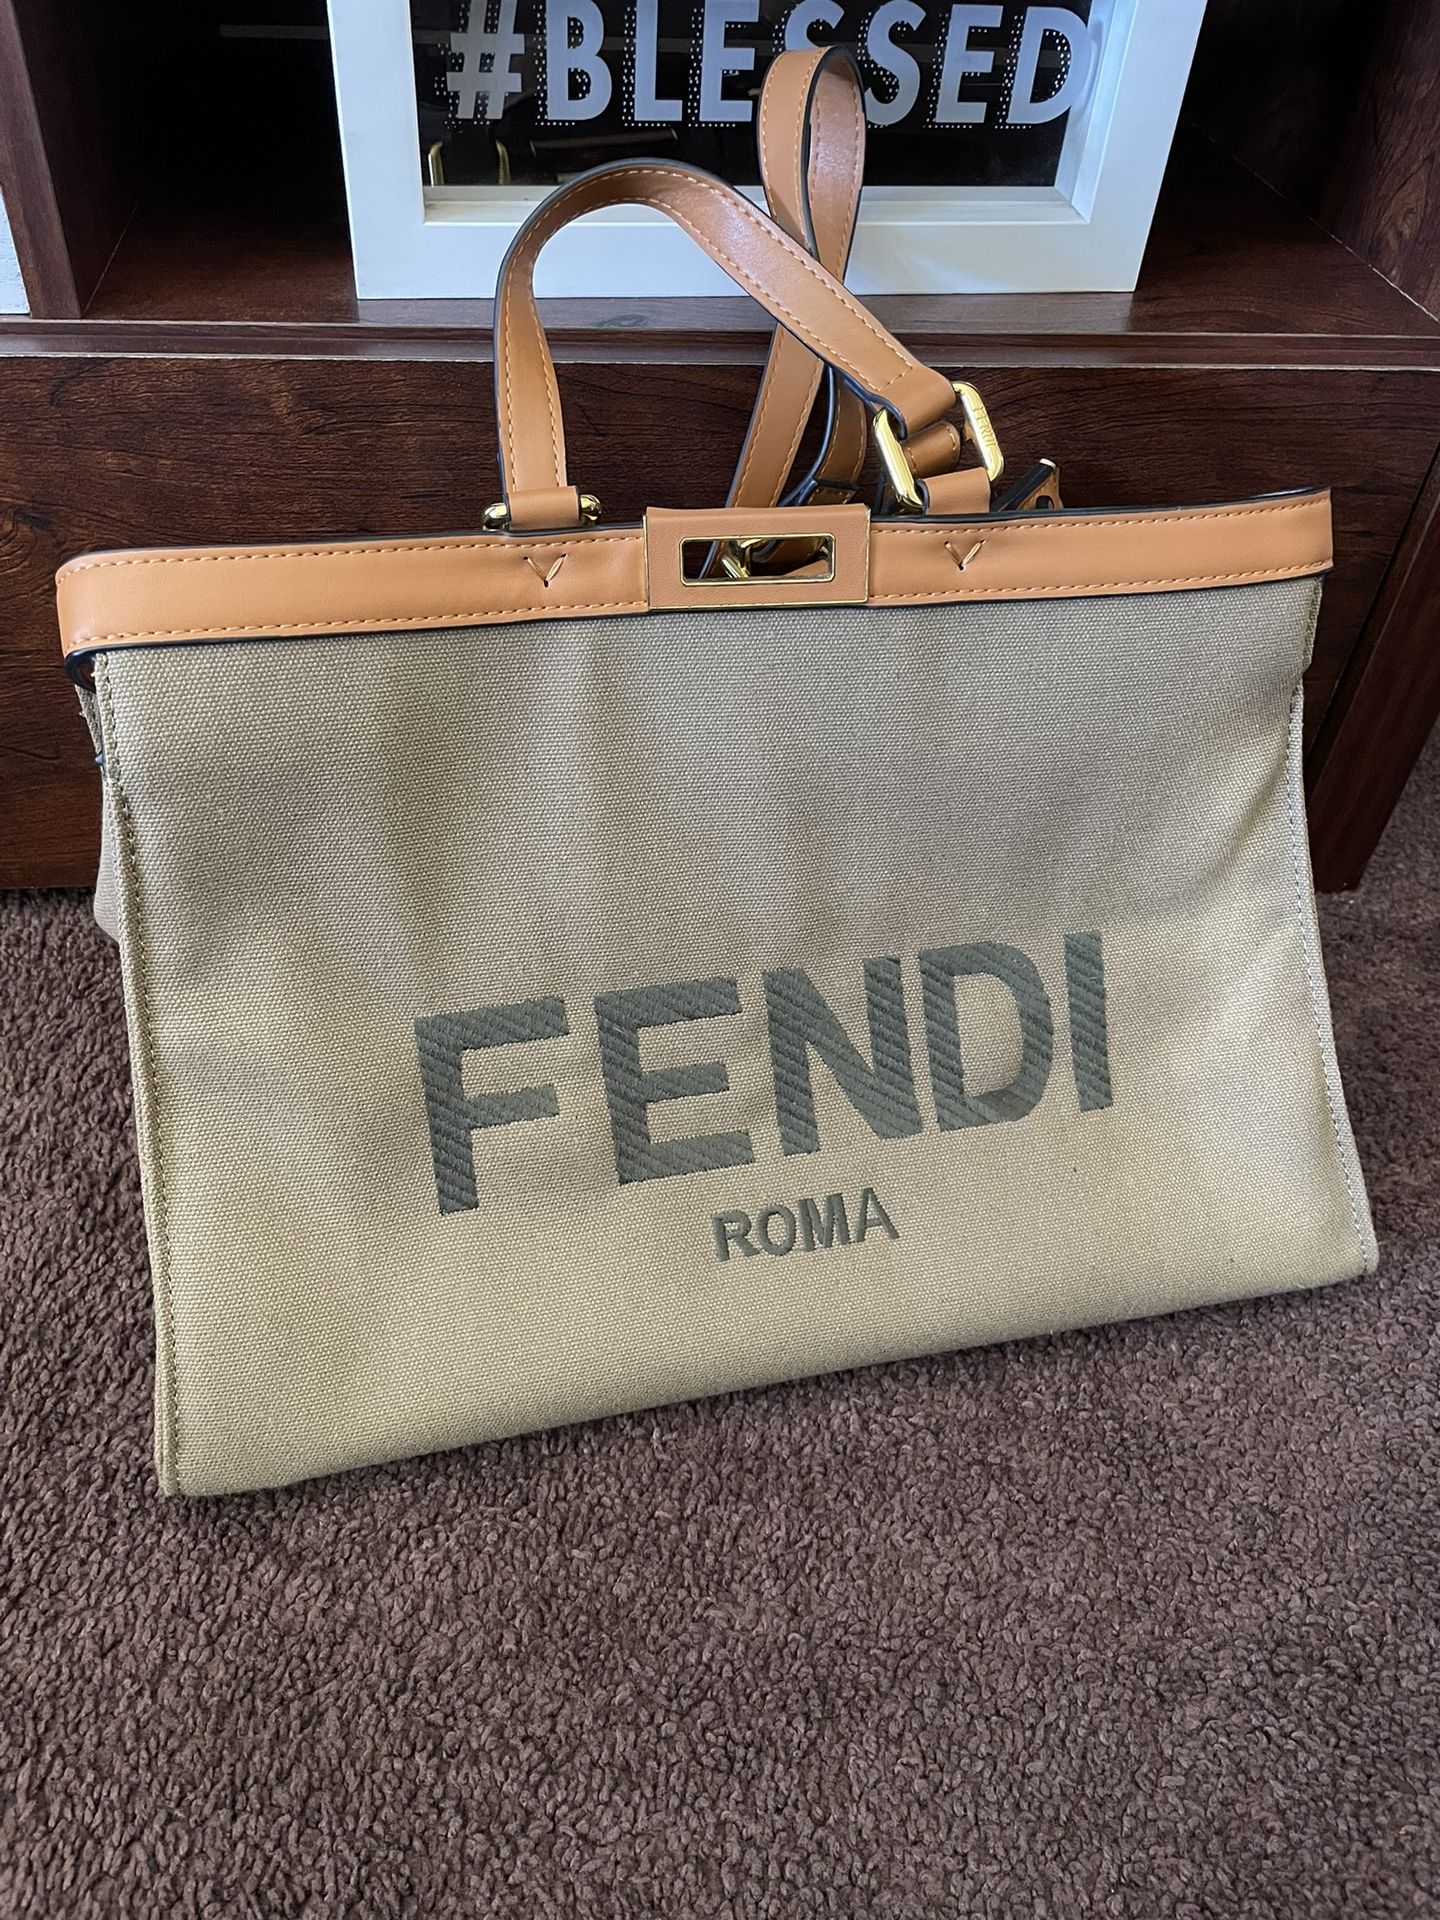 Fendi Roma Olive Green Bag for Sale in Pico Rivera, CA - OfferUp